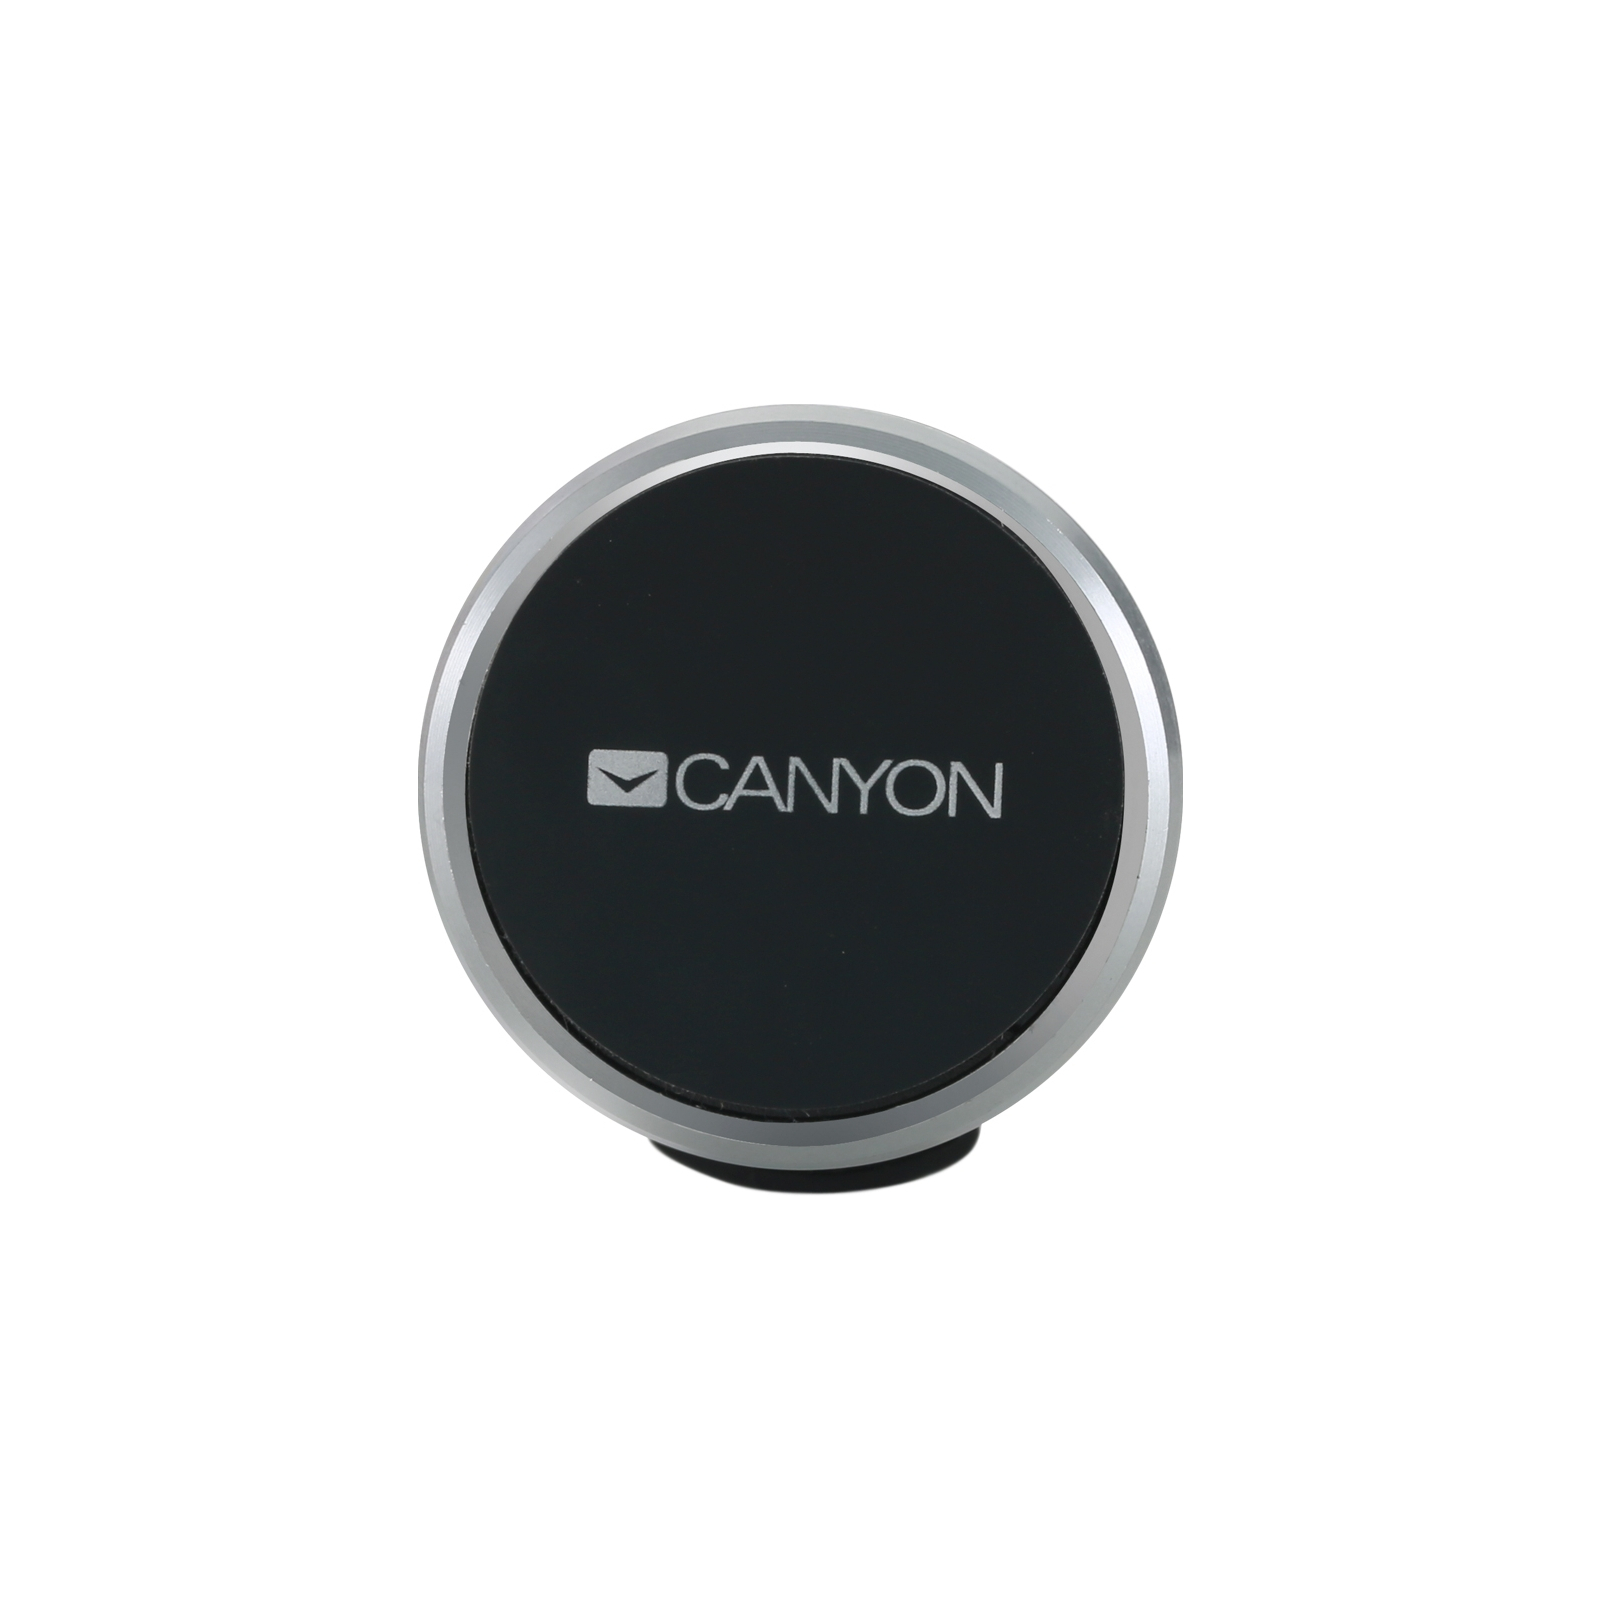 Универсальный автодержатель Canyon Car air vent magnetic phone holder with button (CNE-CCHM4) изображение 3